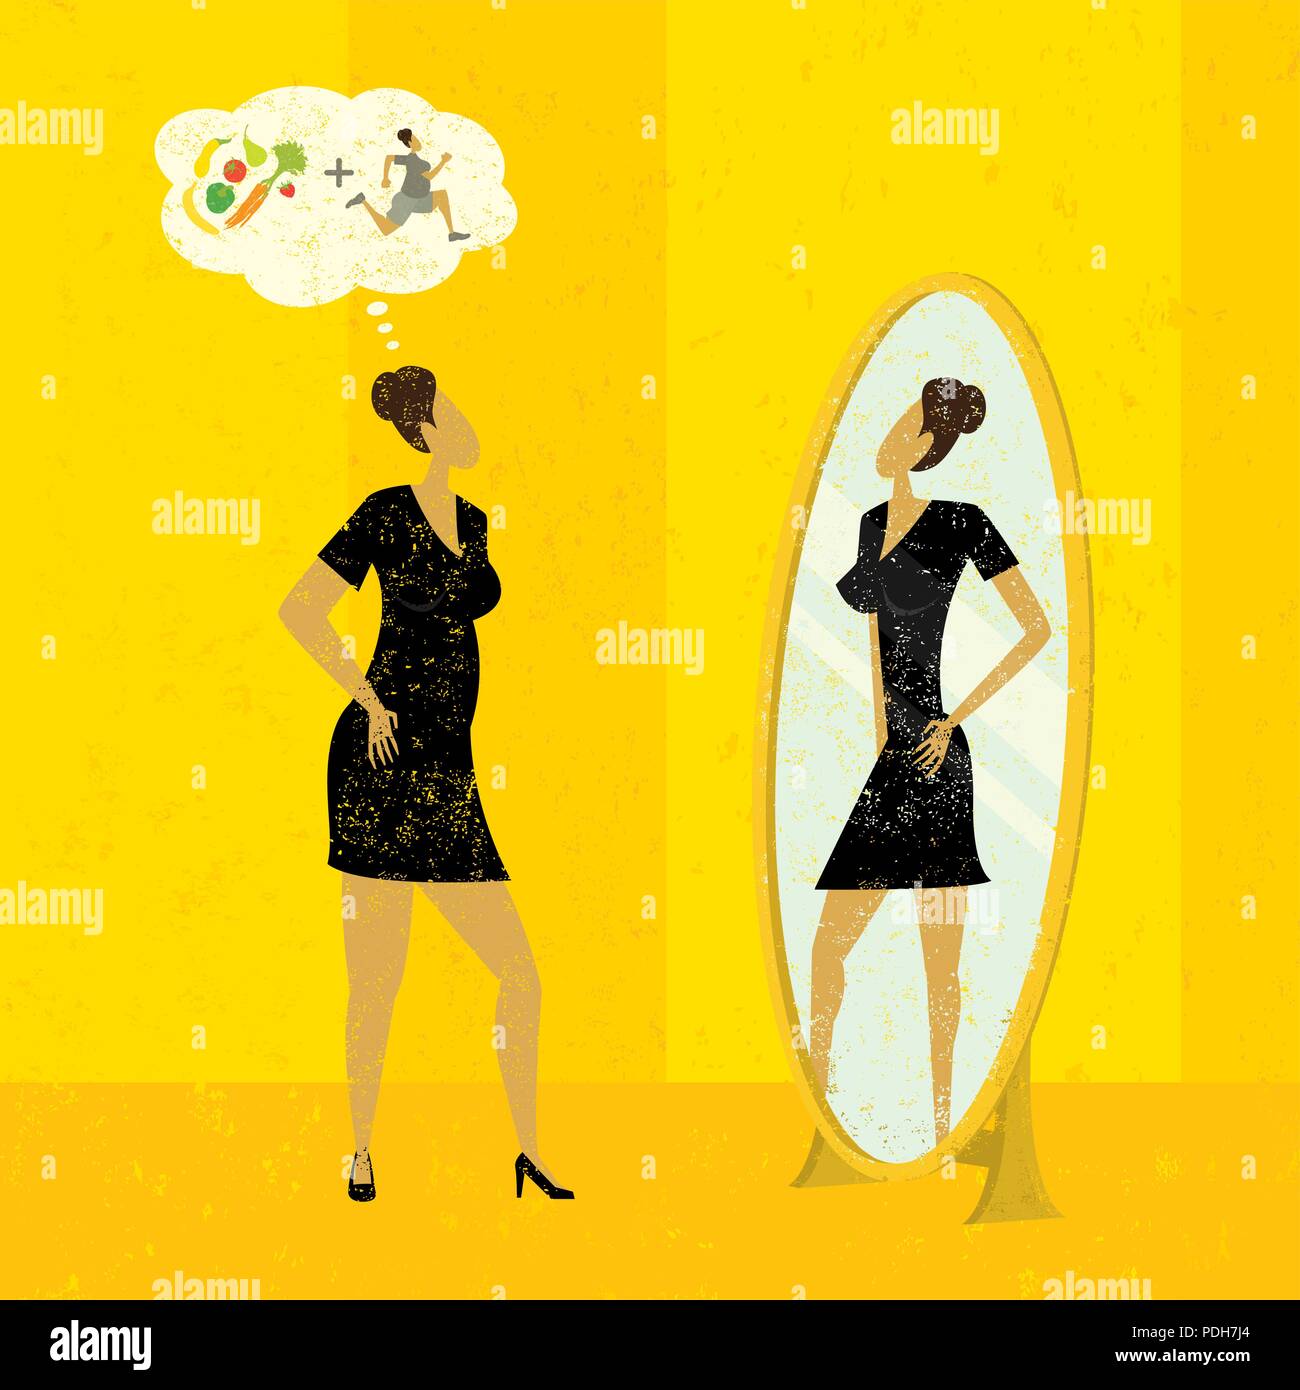 Die Vorstellung einer schlankeren Figur. Eine Frau schaut in den Spiegel und sieht die schlankere Version von sich selbst, dass sie sich mit Ernährung und Bewegung erreichen kann. Stock Vektor